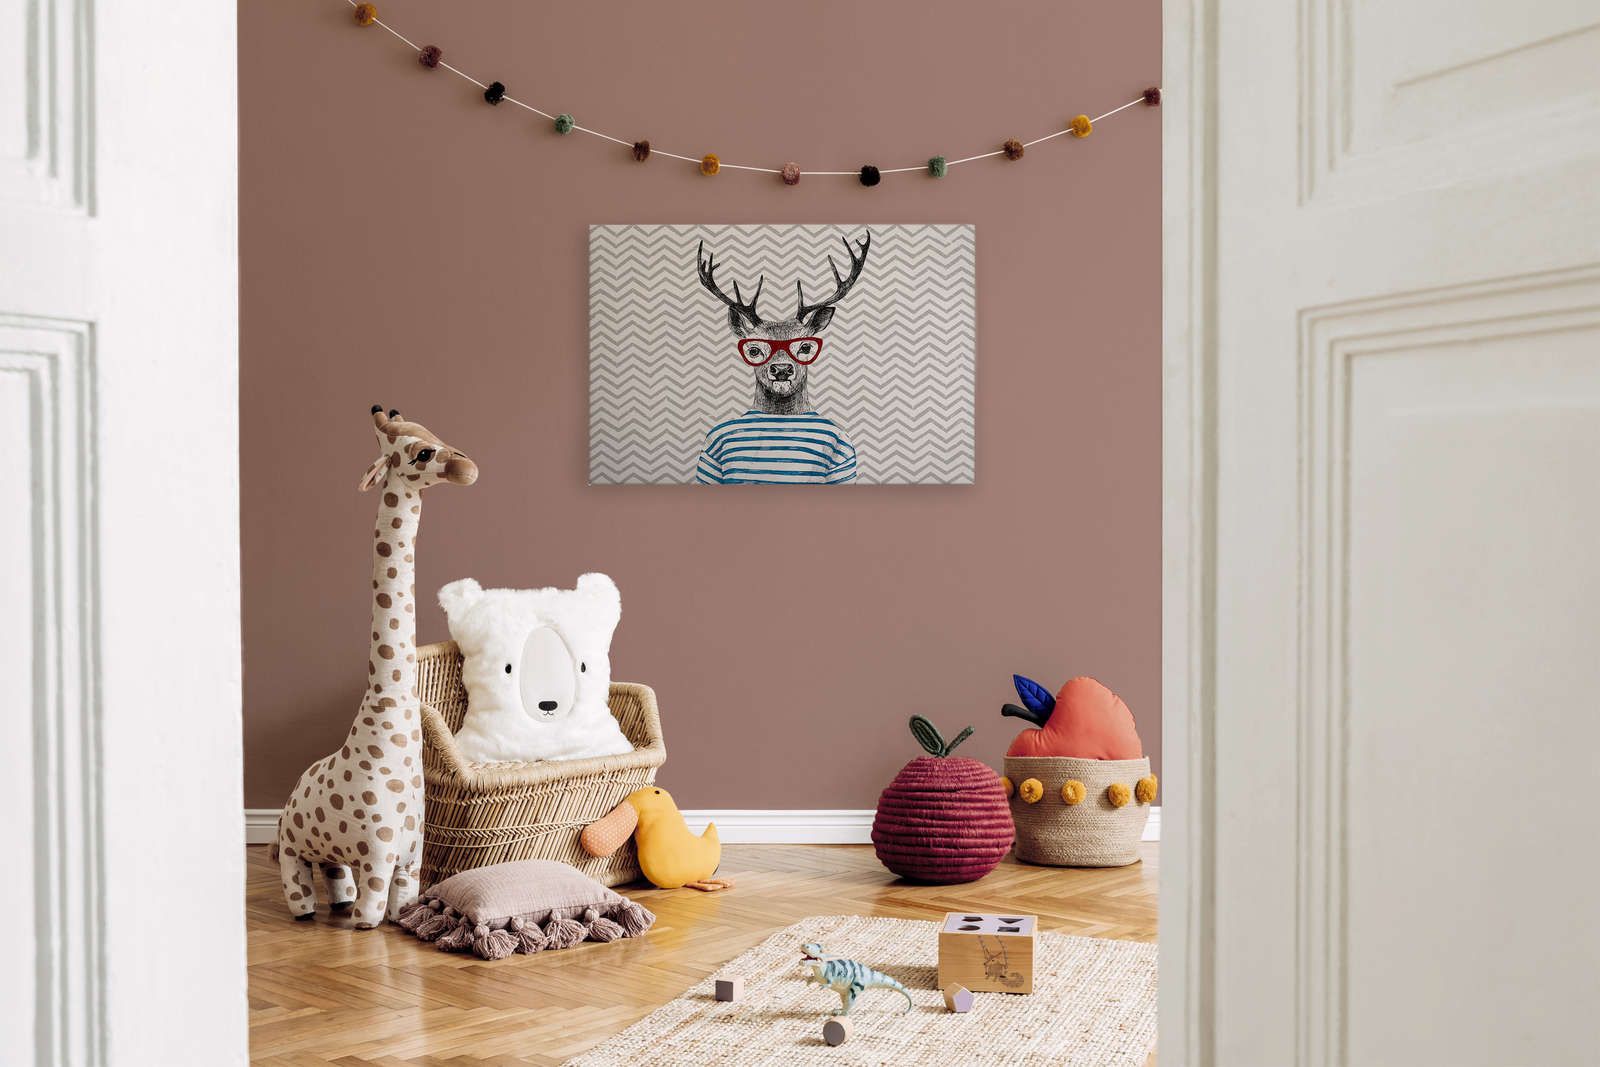             Cuadro lienzo habitación infantil diseño cómic, ciervo con gafas - 0,90 m x 0,60 m
        